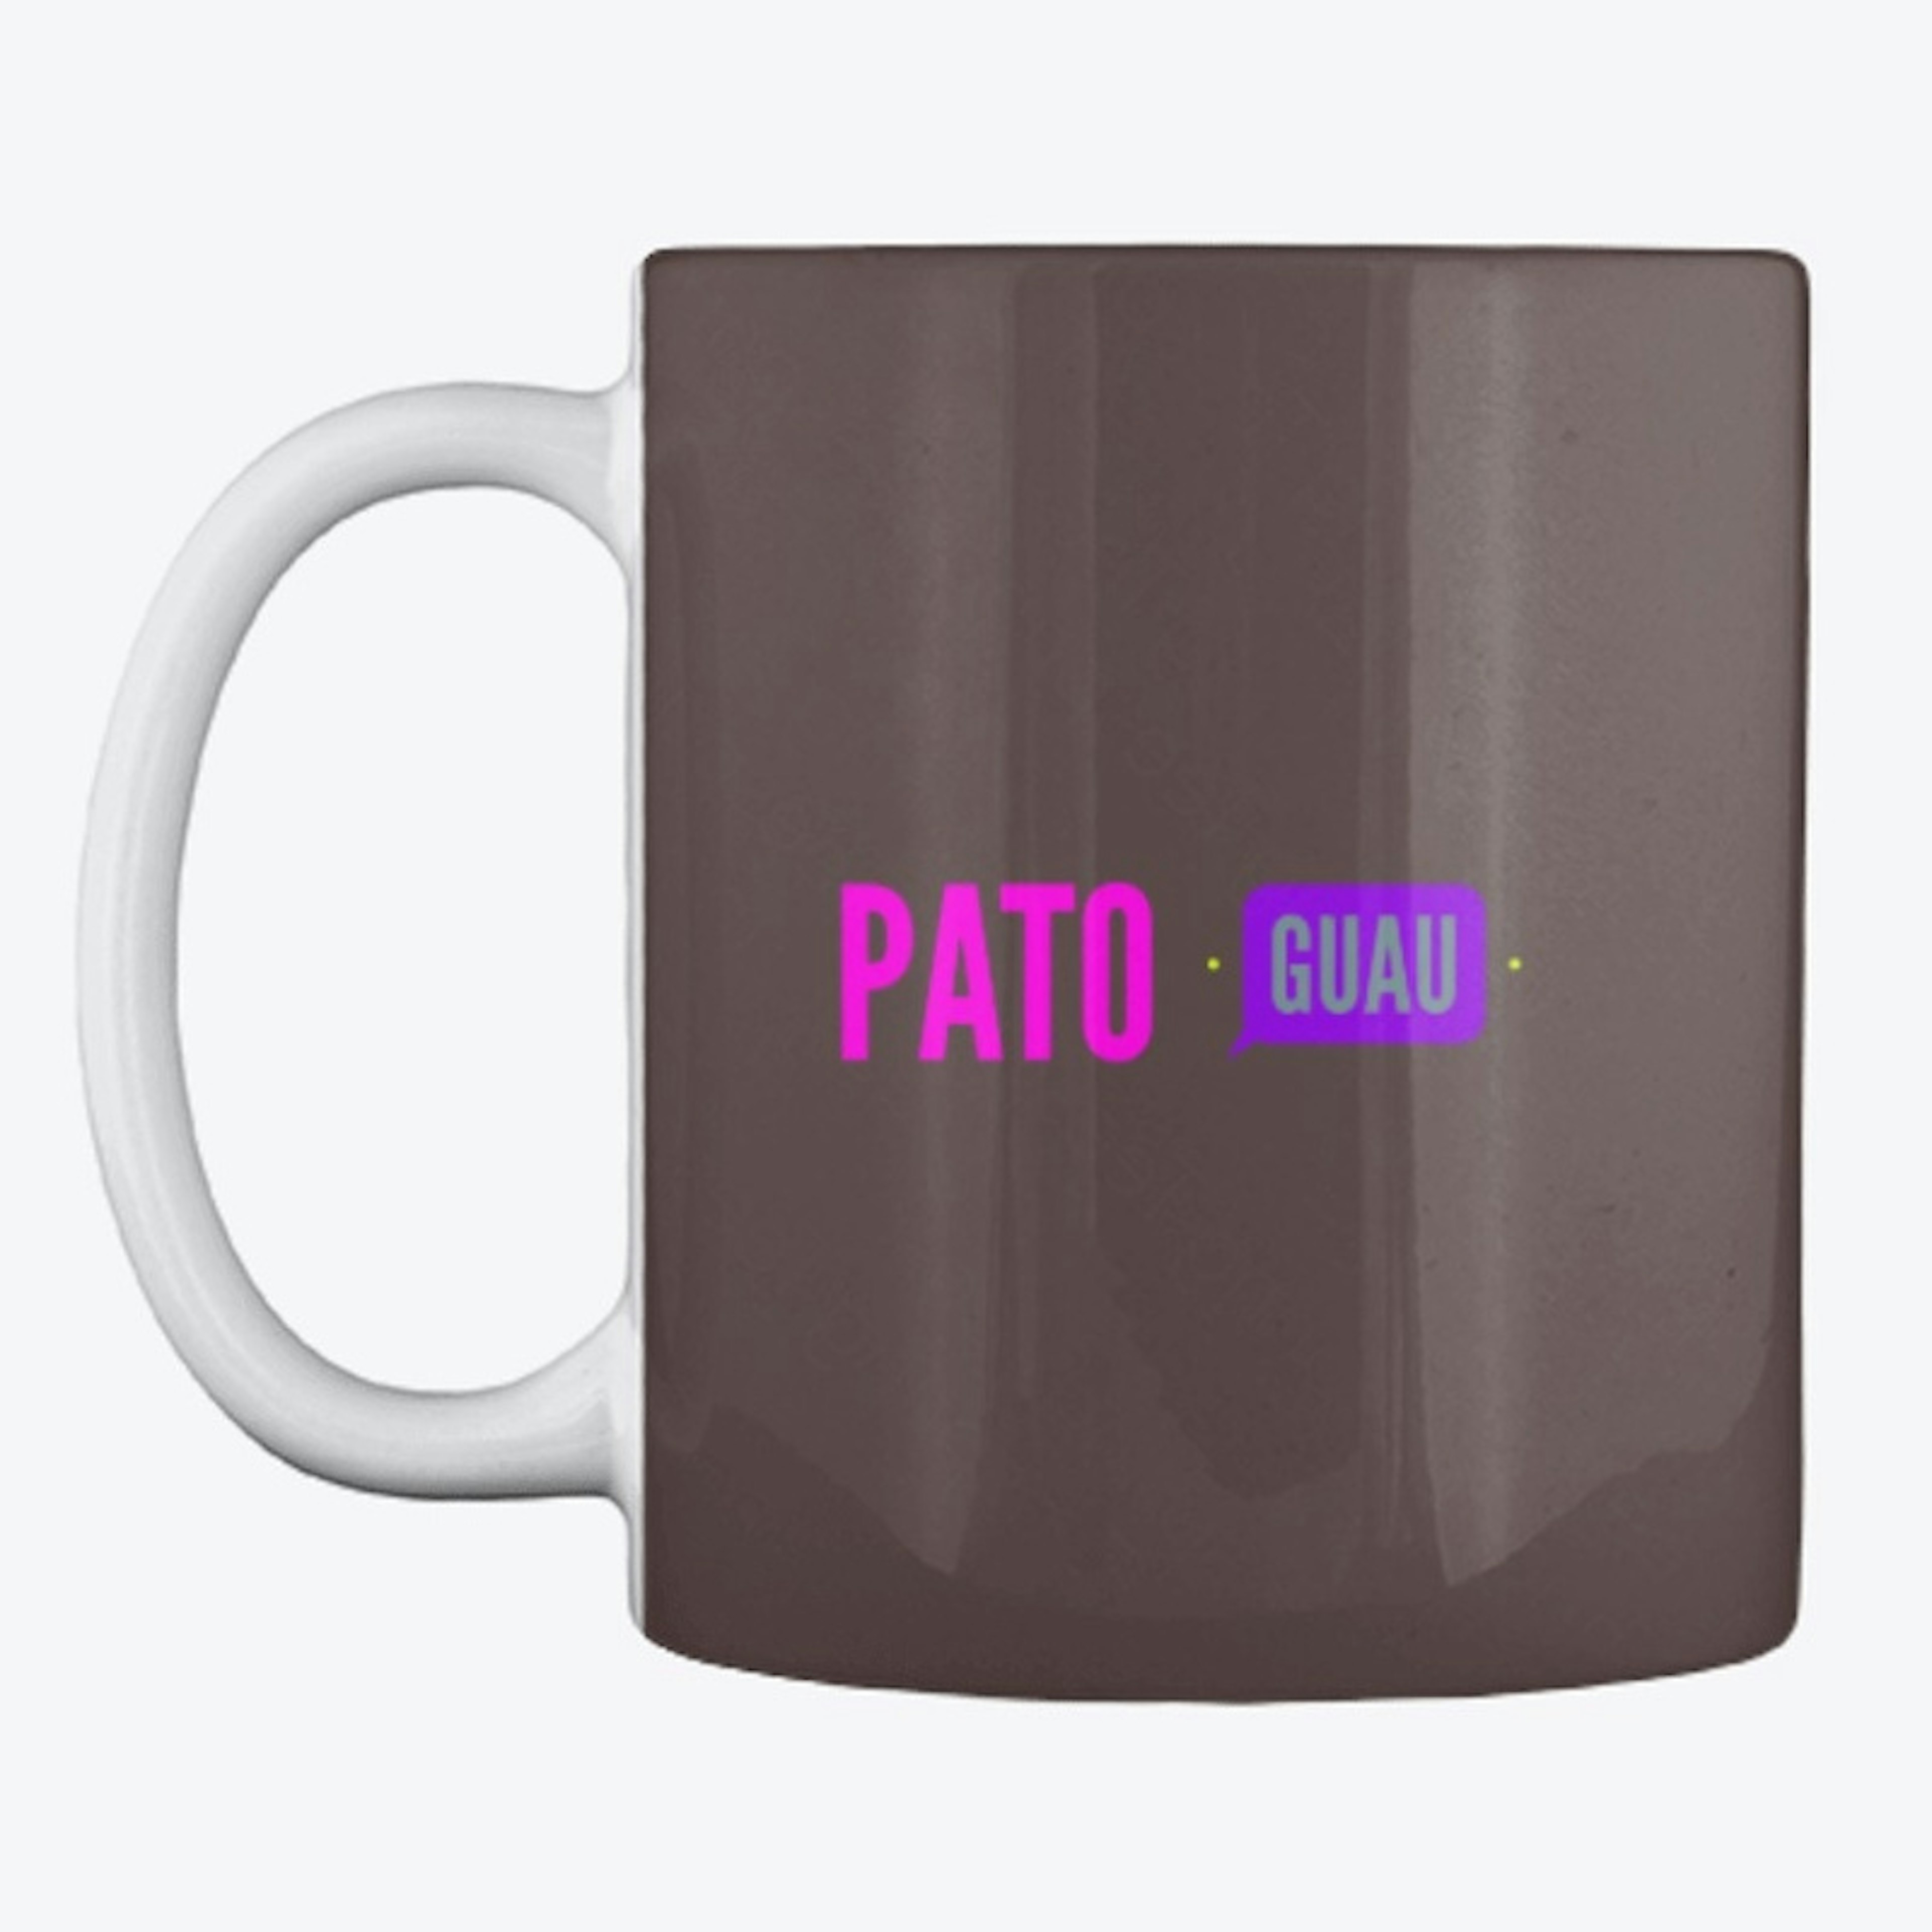 Pato Guau Exclusive design